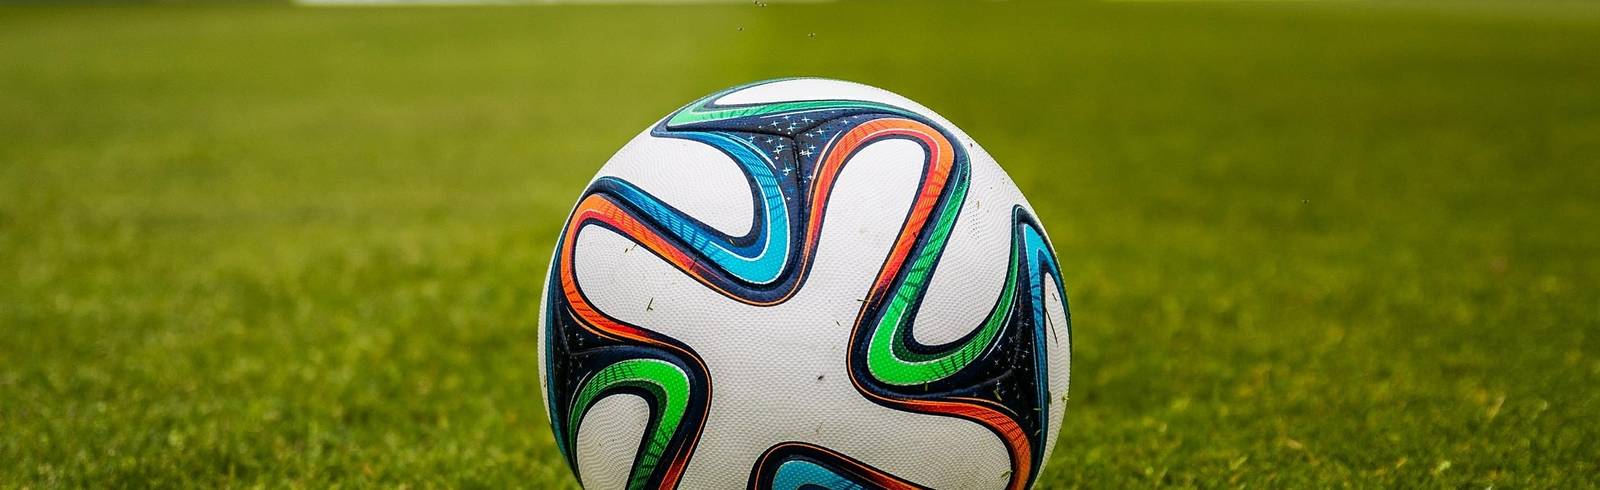 Regionalliga Ost: Endlich wieder echter Fußball